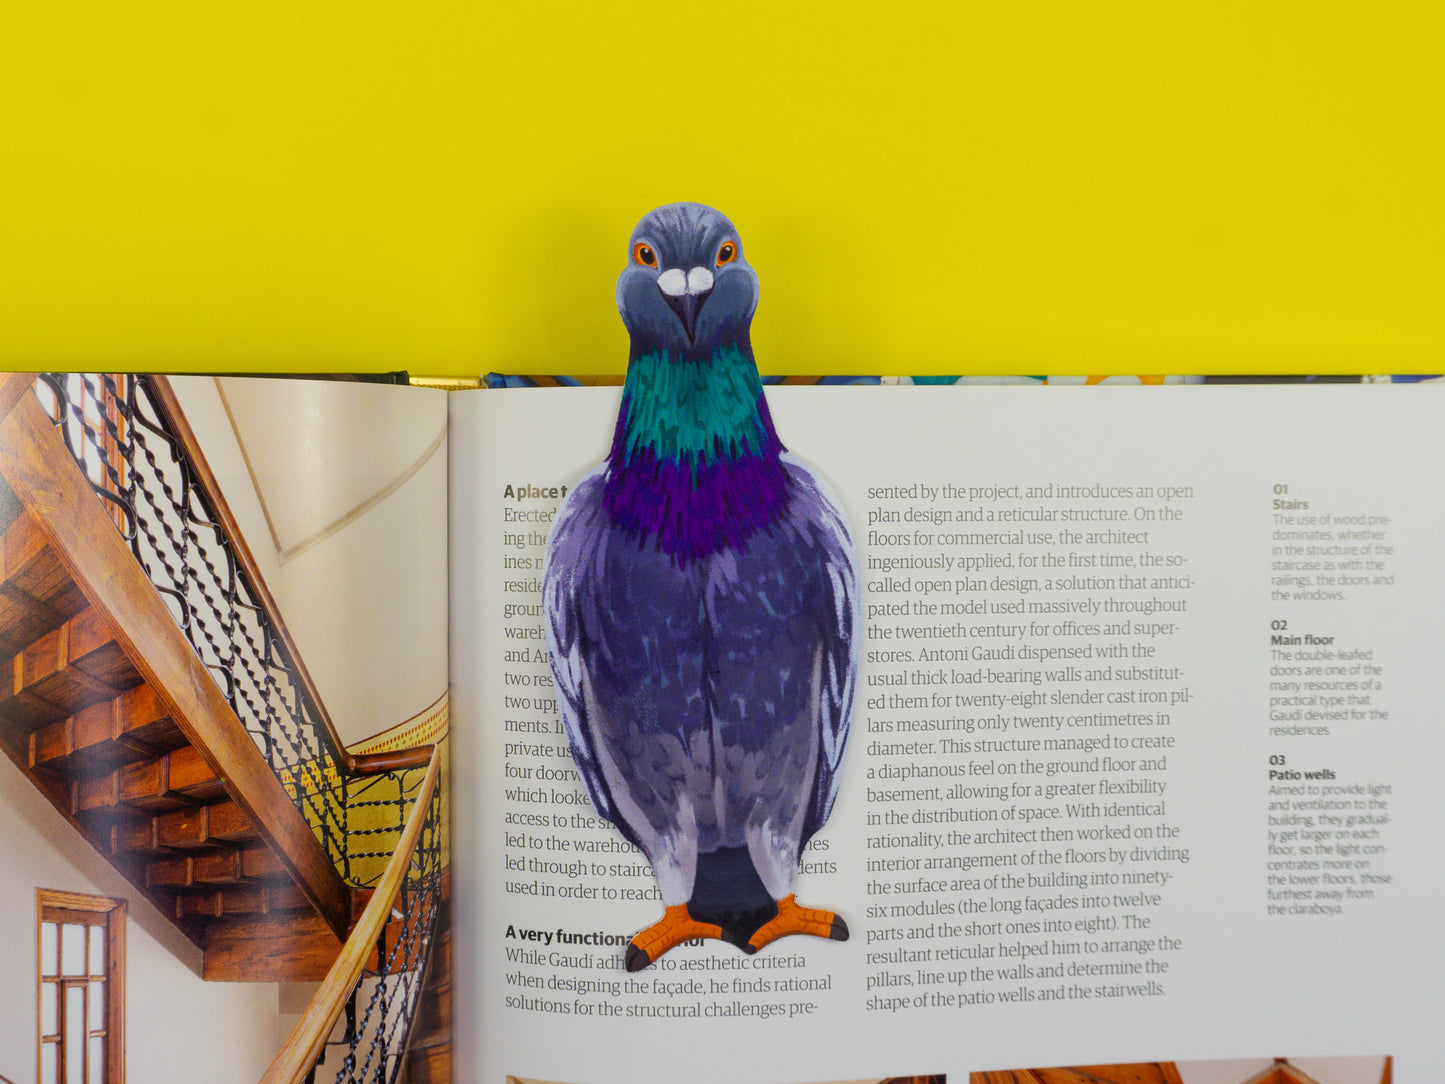 Pigeon Die-Cut Bookmark